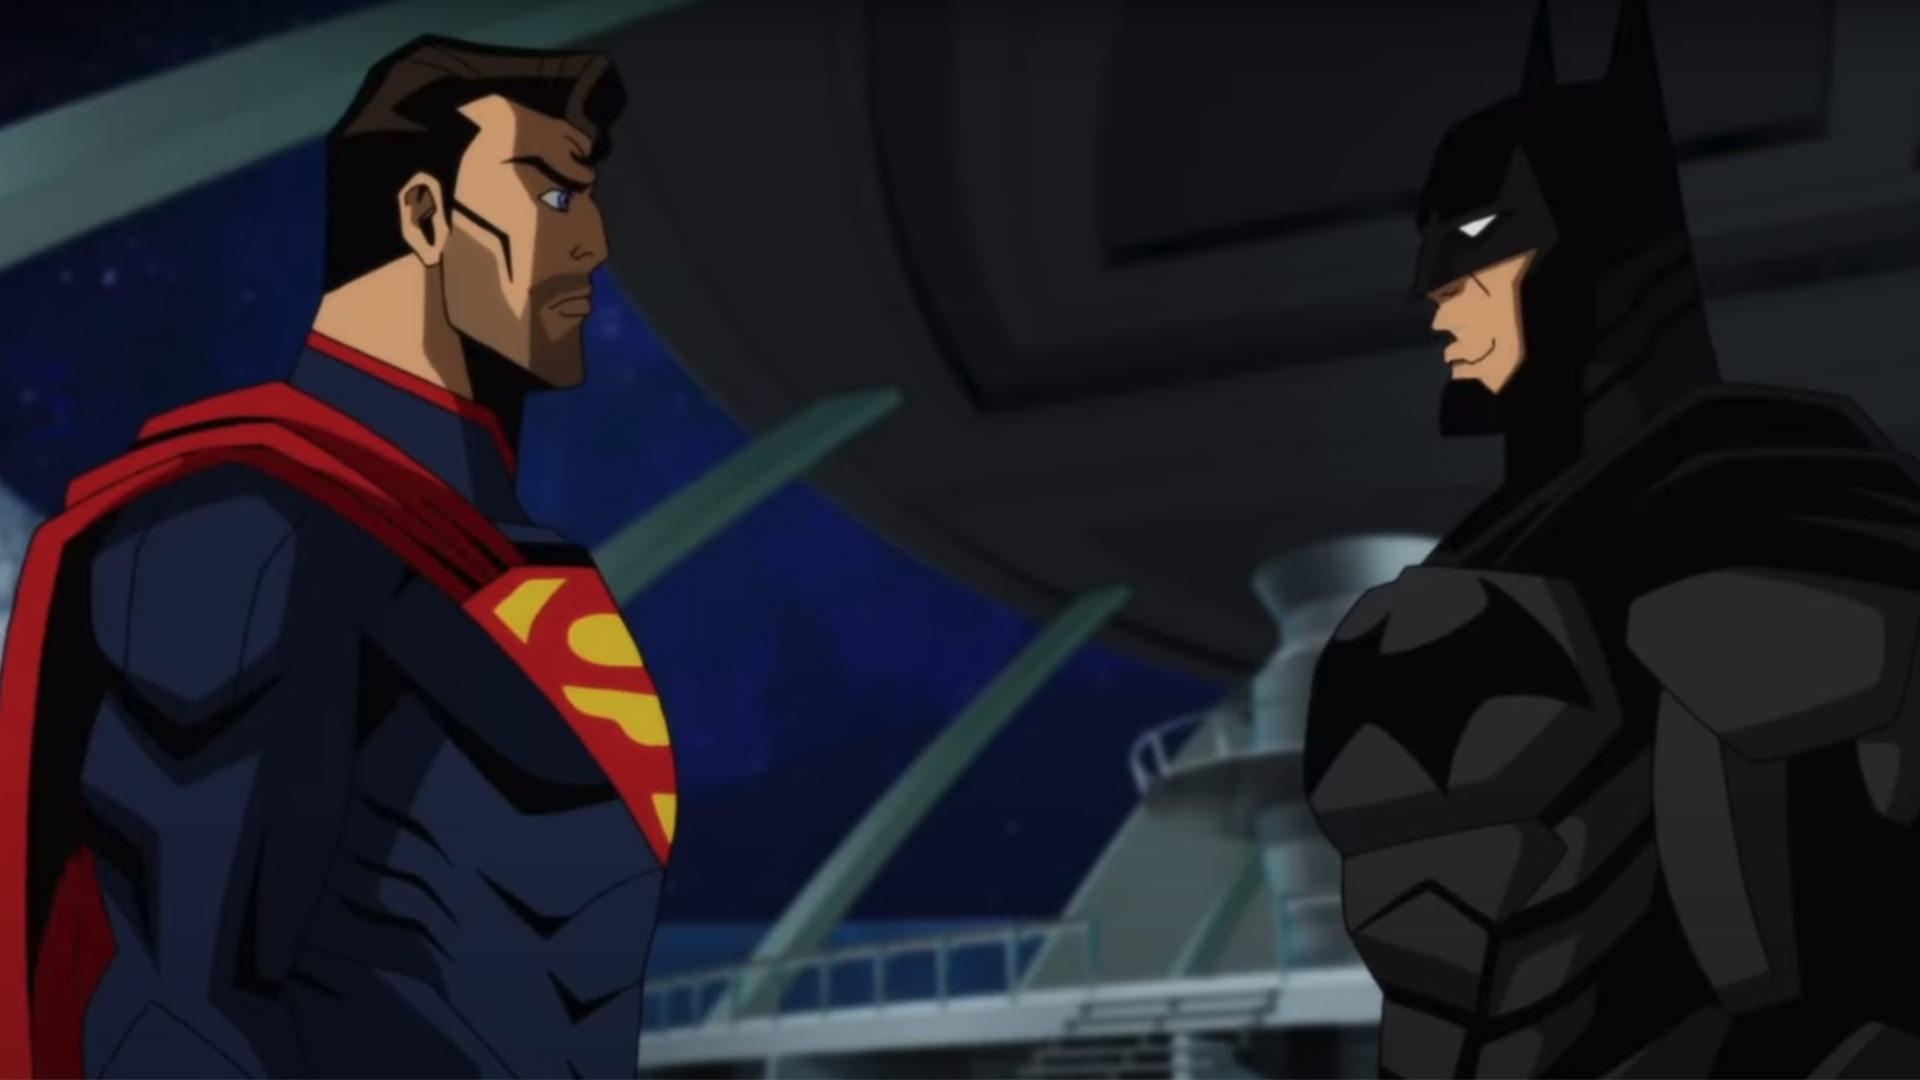 بتمن و سوپرمن در حال صحبت در انیمیشن Injustice